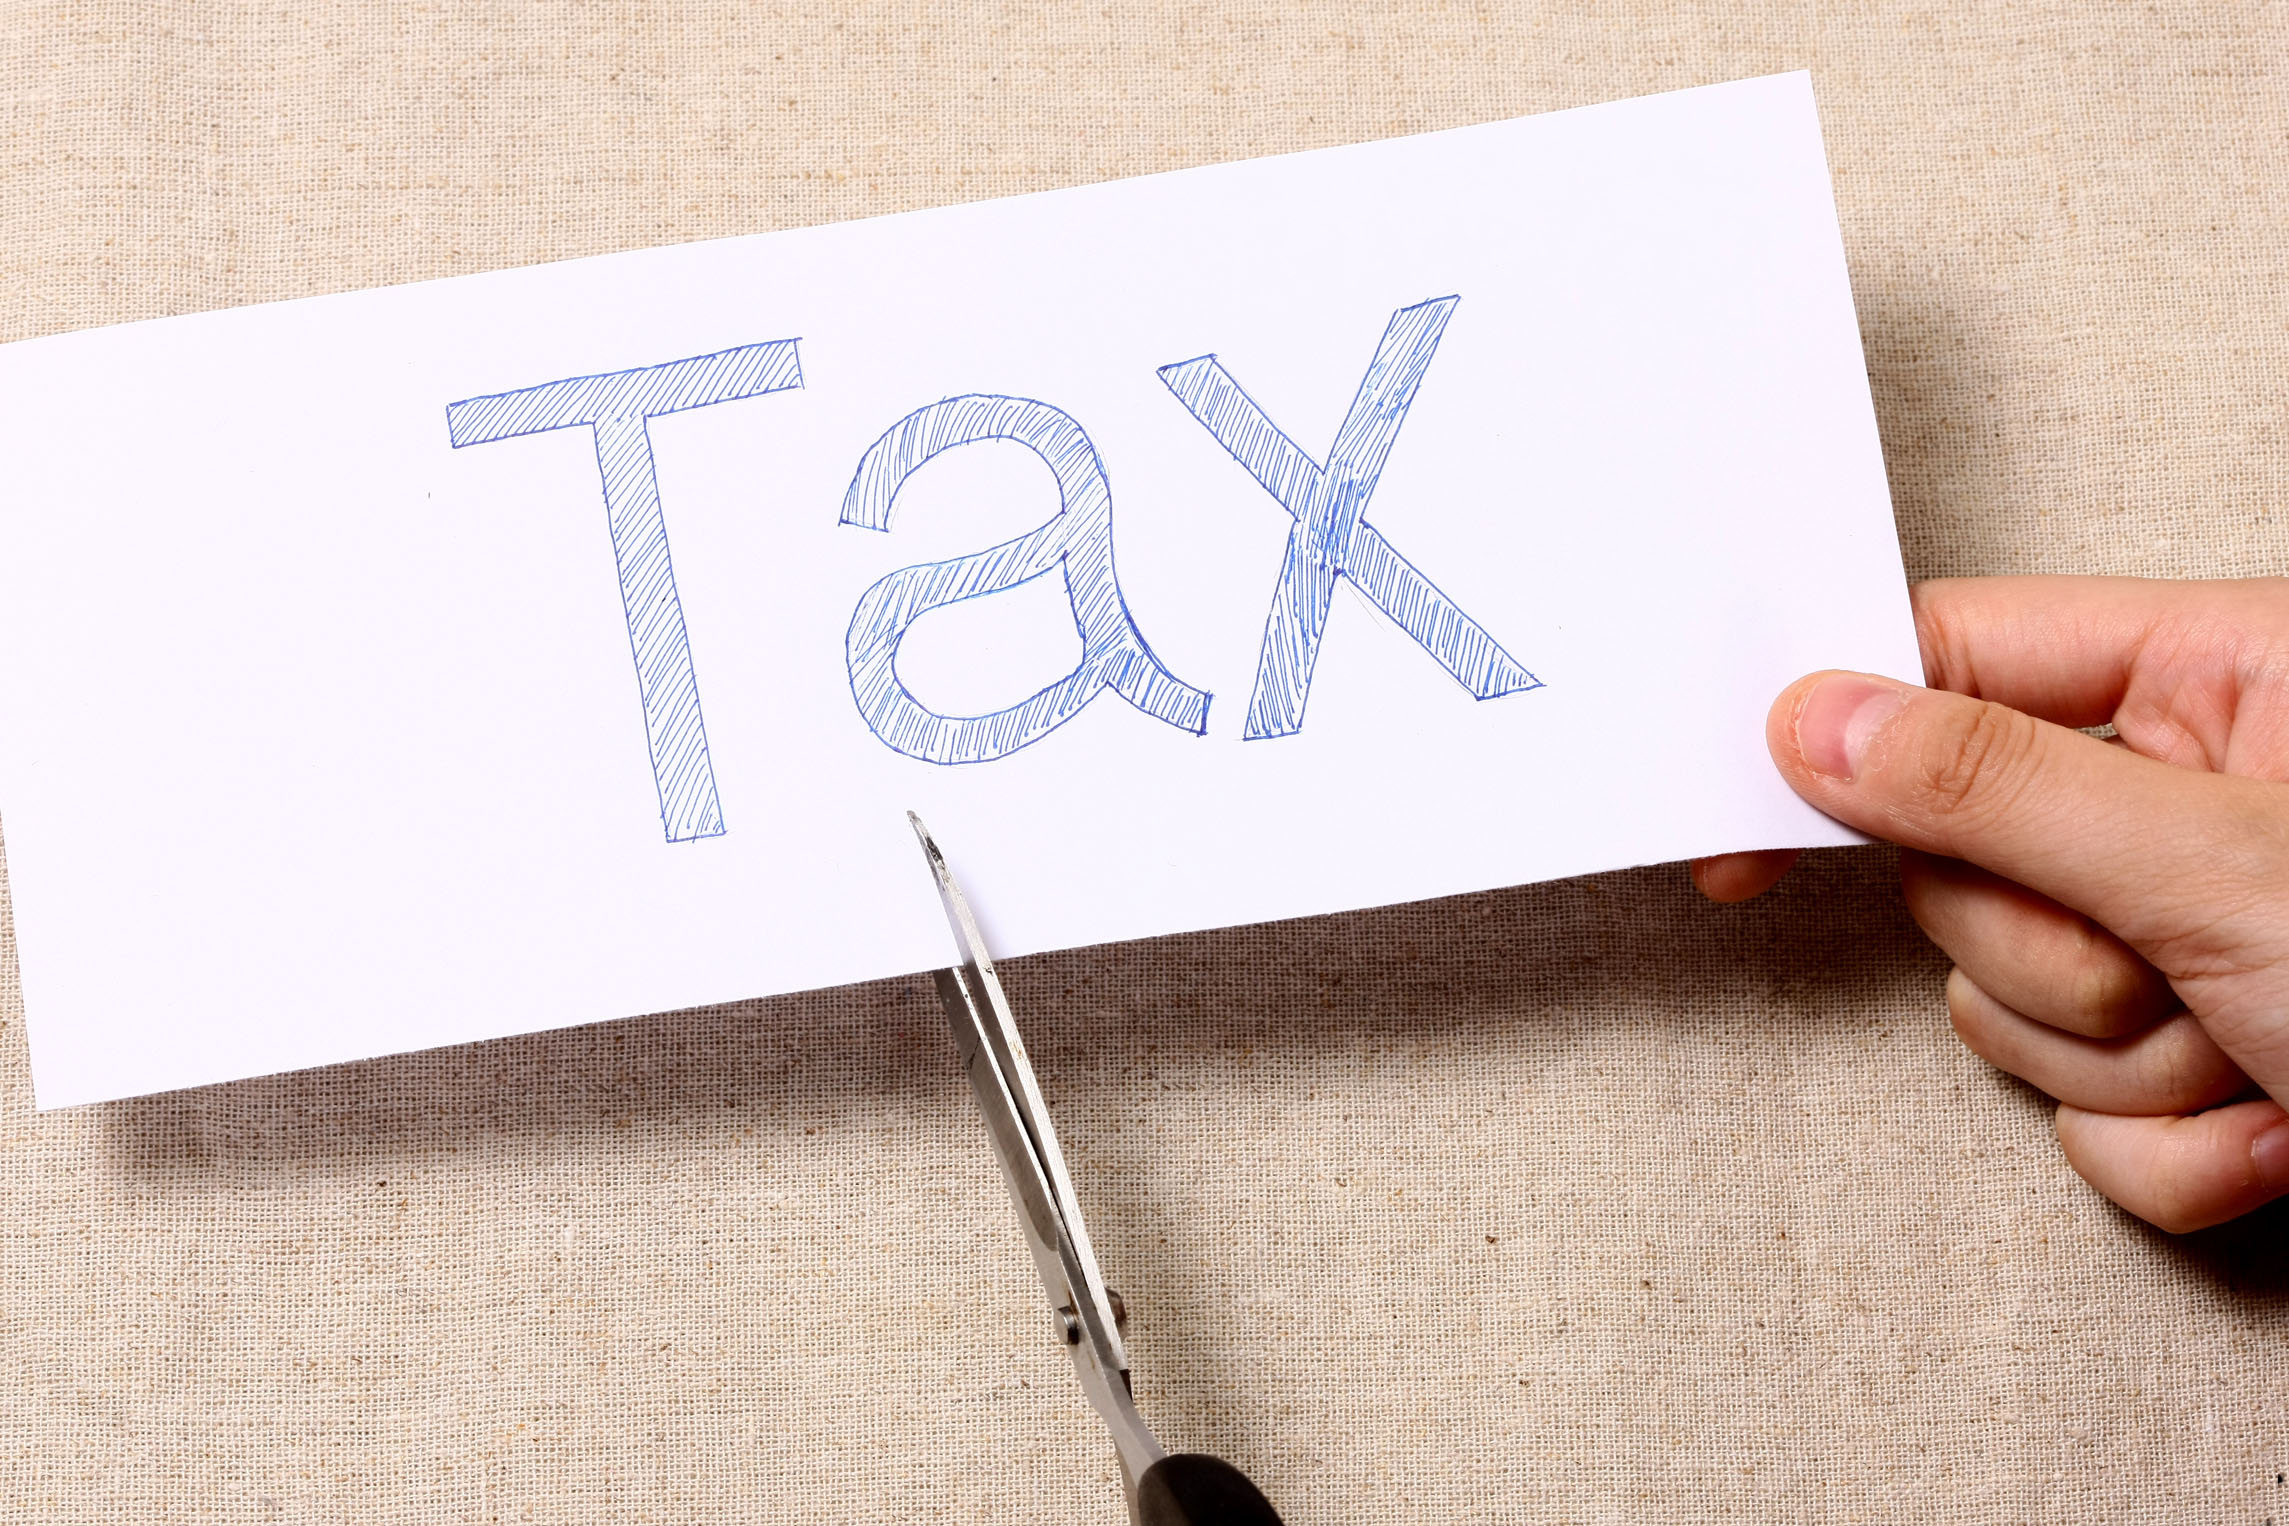 个人、企业进行税务筹划有哪些优惠政策？